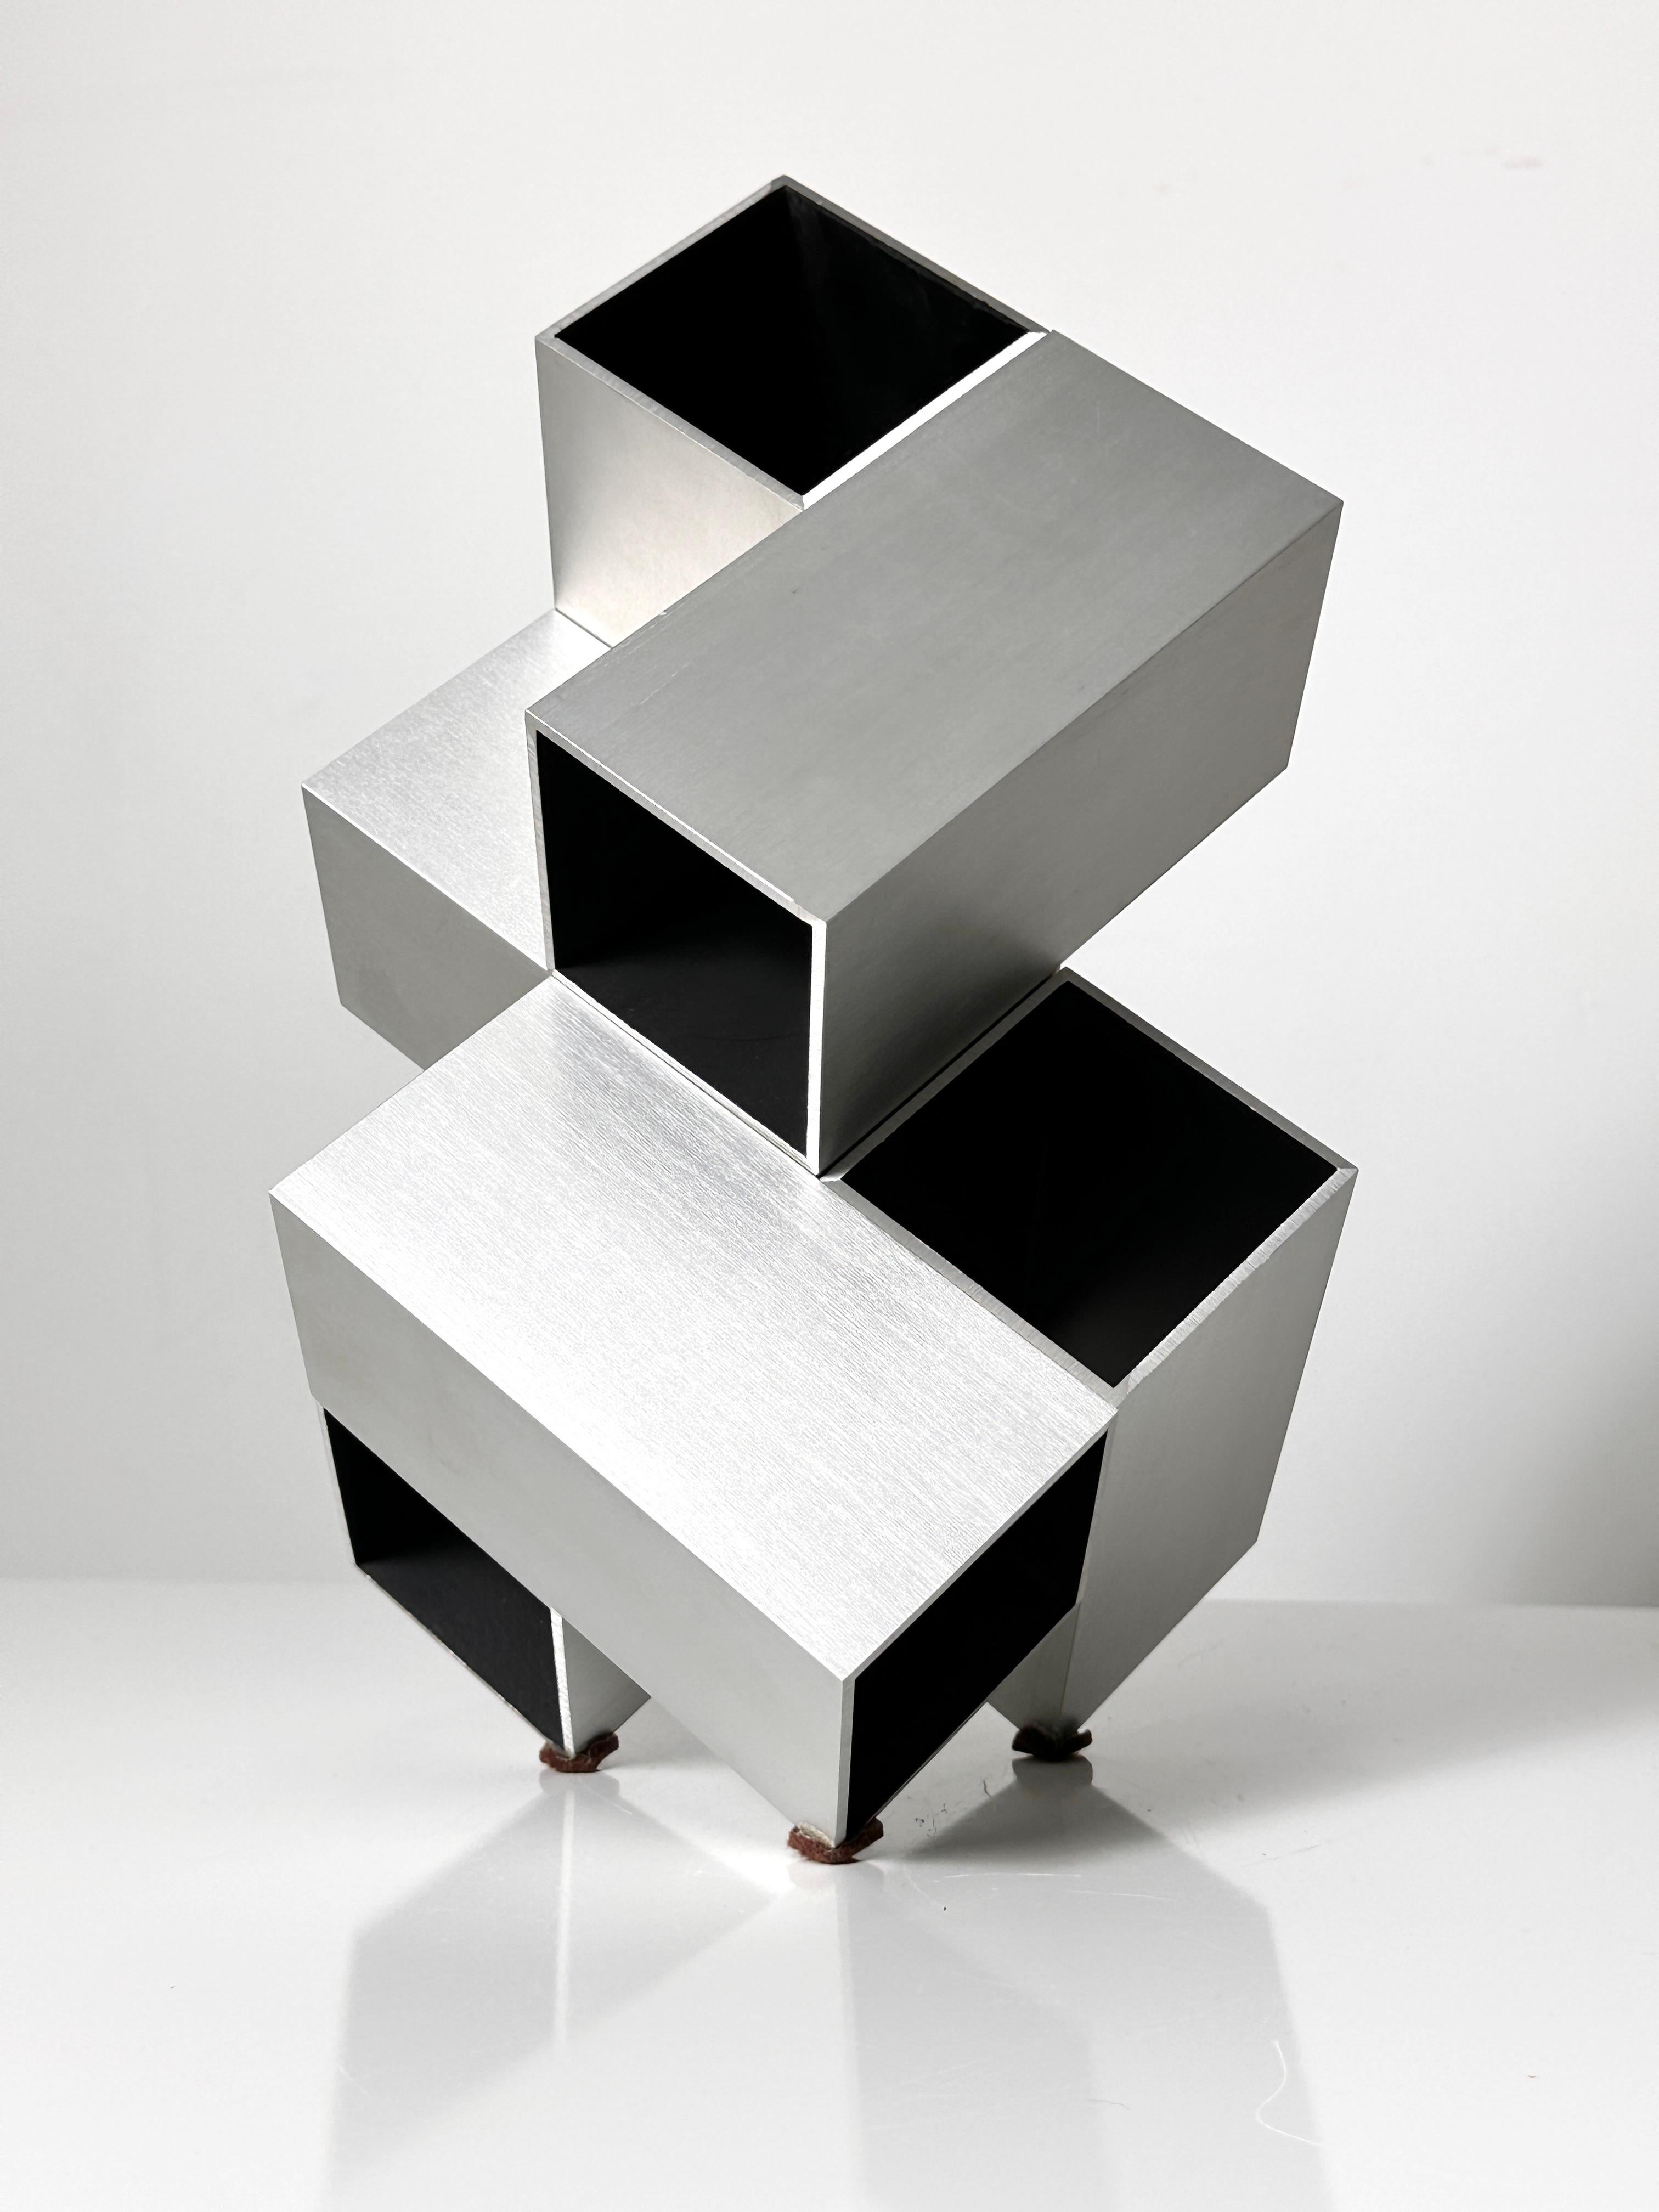 Fin du 20e siècle Sculpture cubique de Kosso Eloul, artiste israélien 1920-1995 Toronto, Canada 